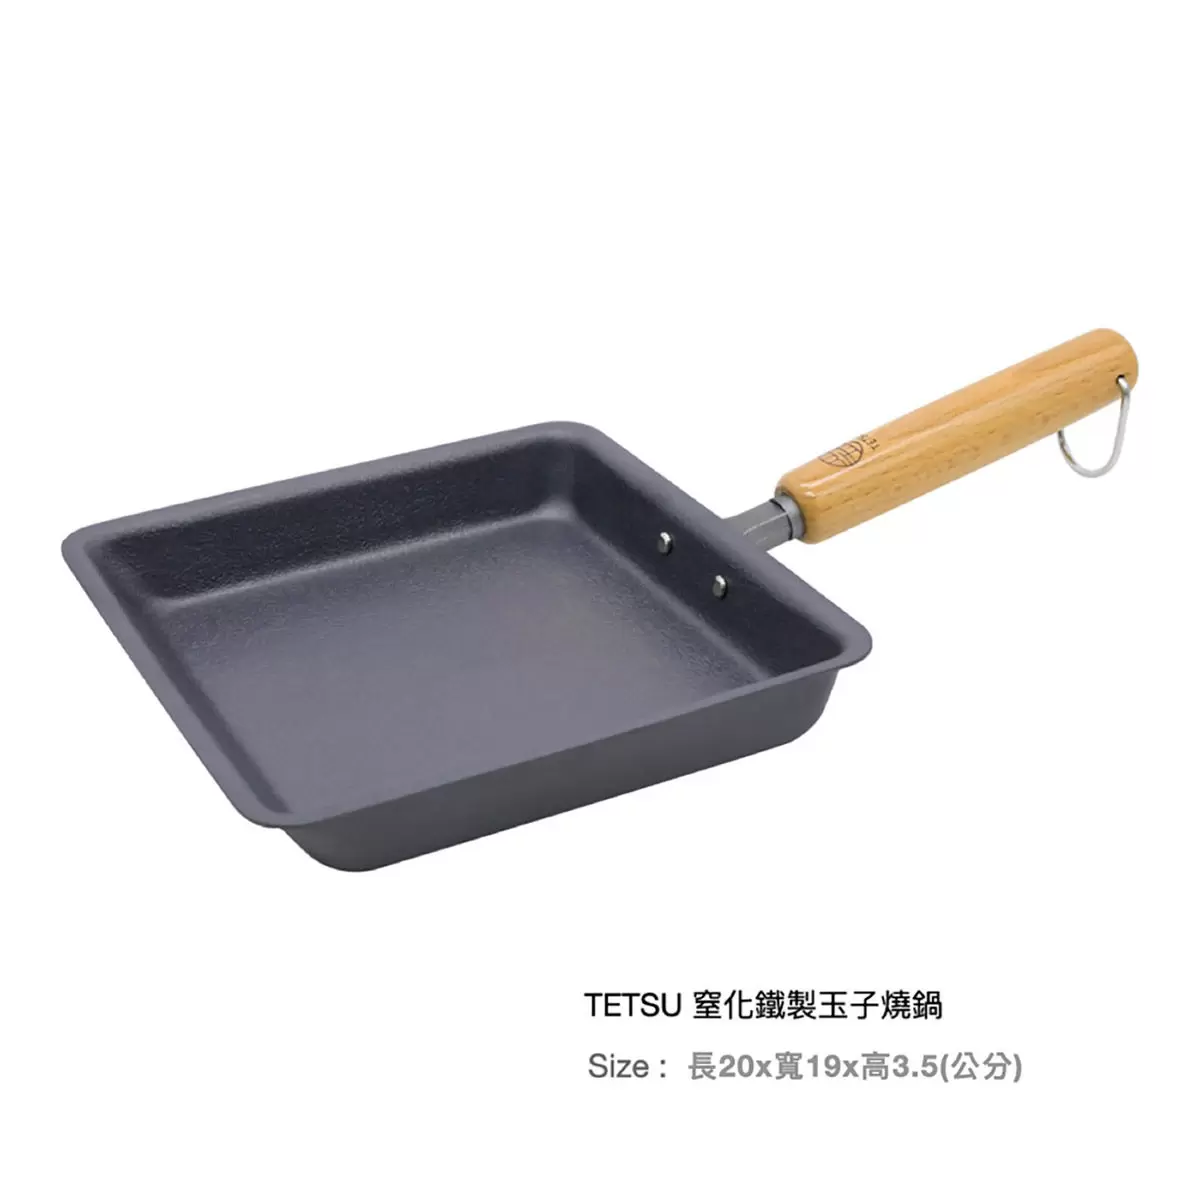 TETSU 窒化鐵製玉子燒鍋